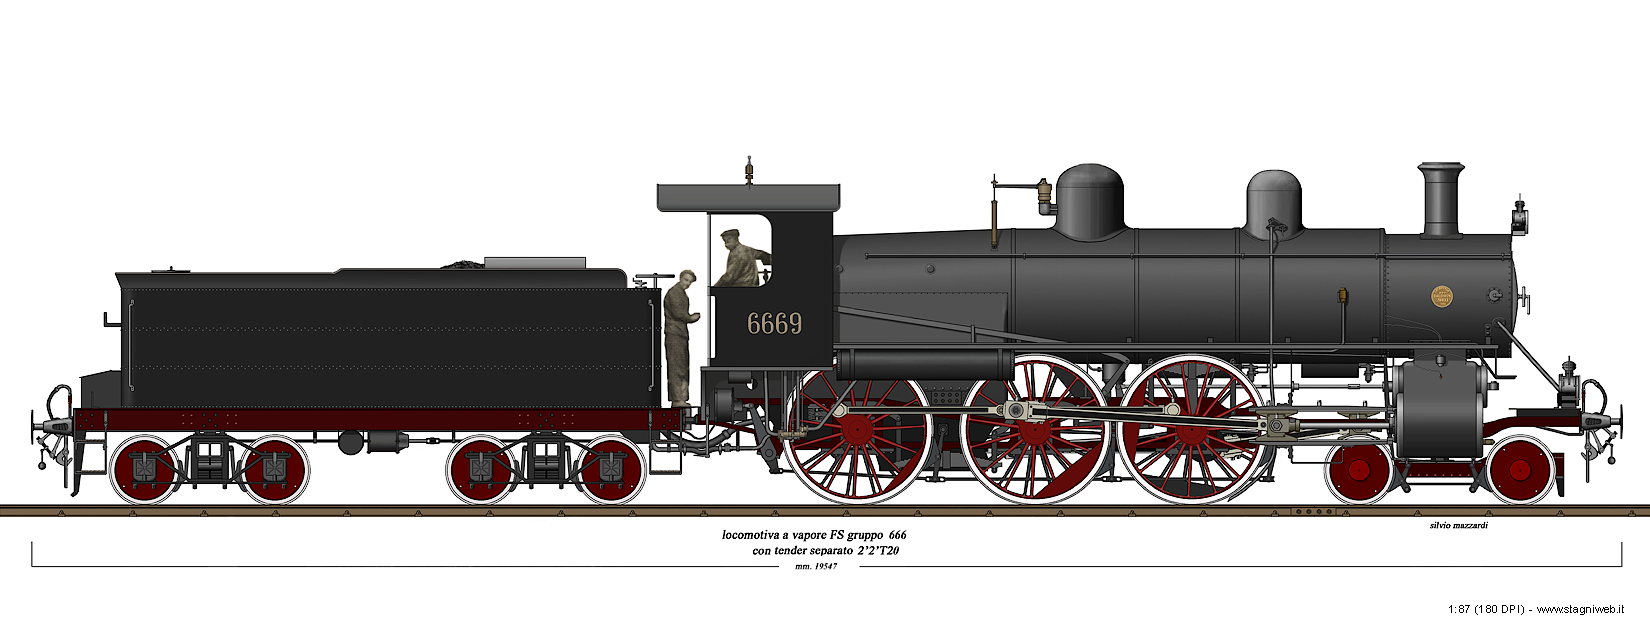 Locomotive a vapore con tender separato - Gr. 666